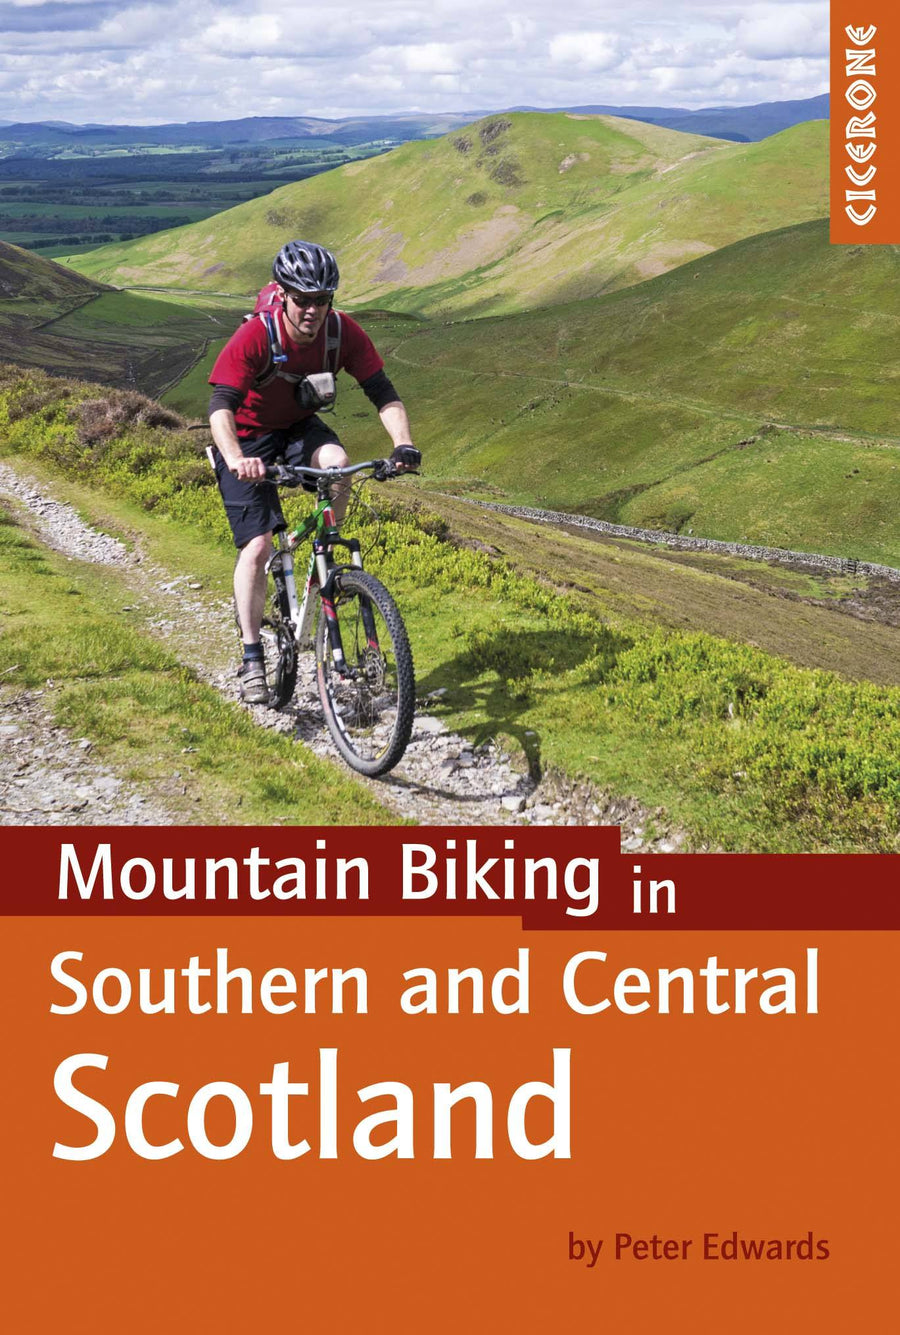 Guide vélo (en anglais) - Southern & Central Scotland mountain biking | Cicerone guide vélo Cicerone 